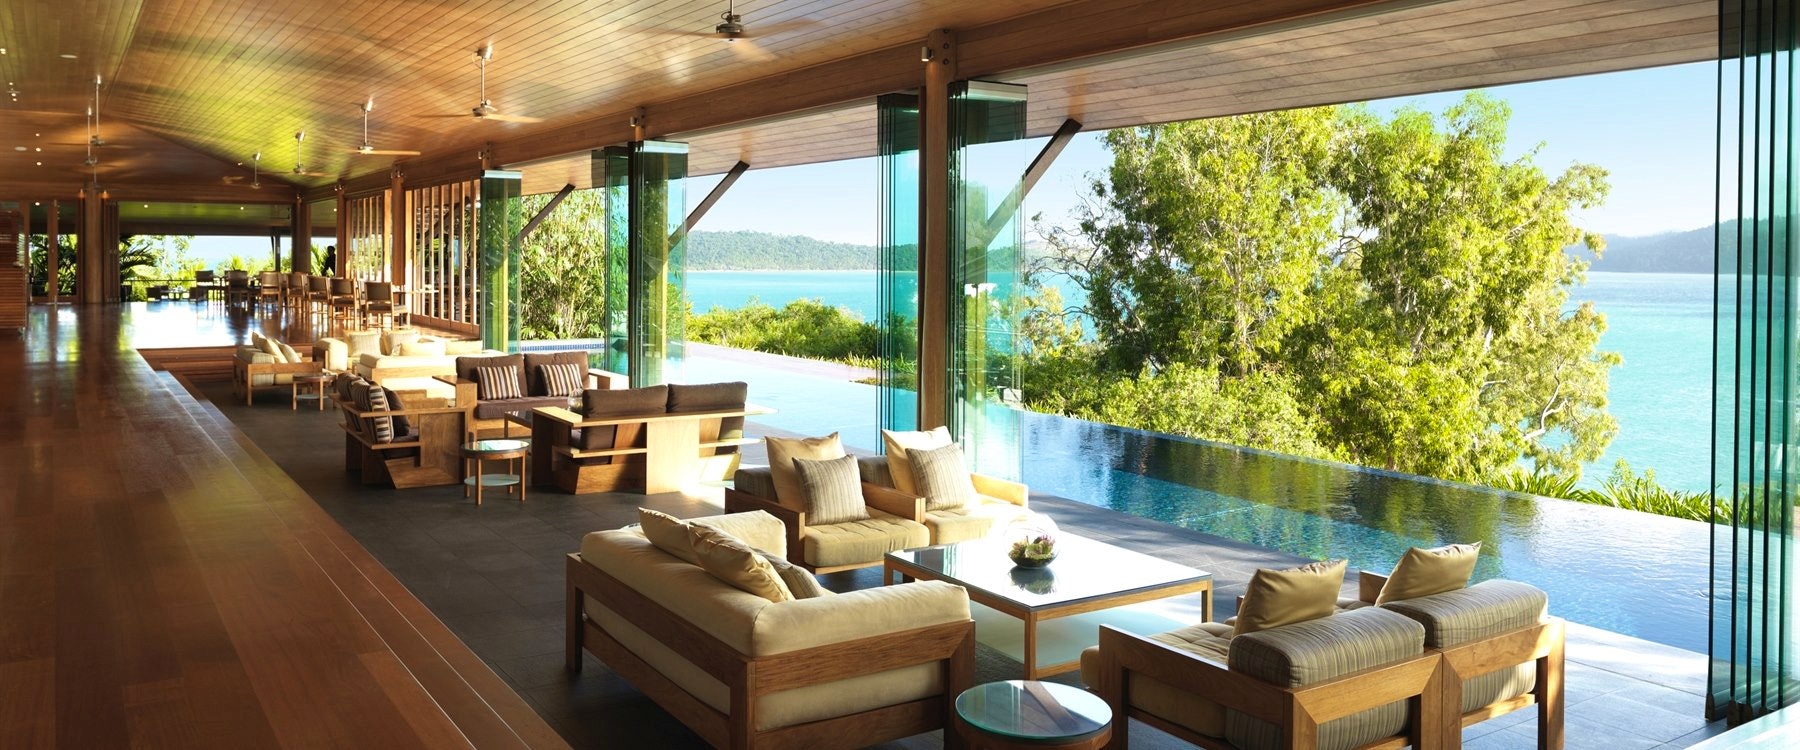 Lounge area, qualia, hamilton island